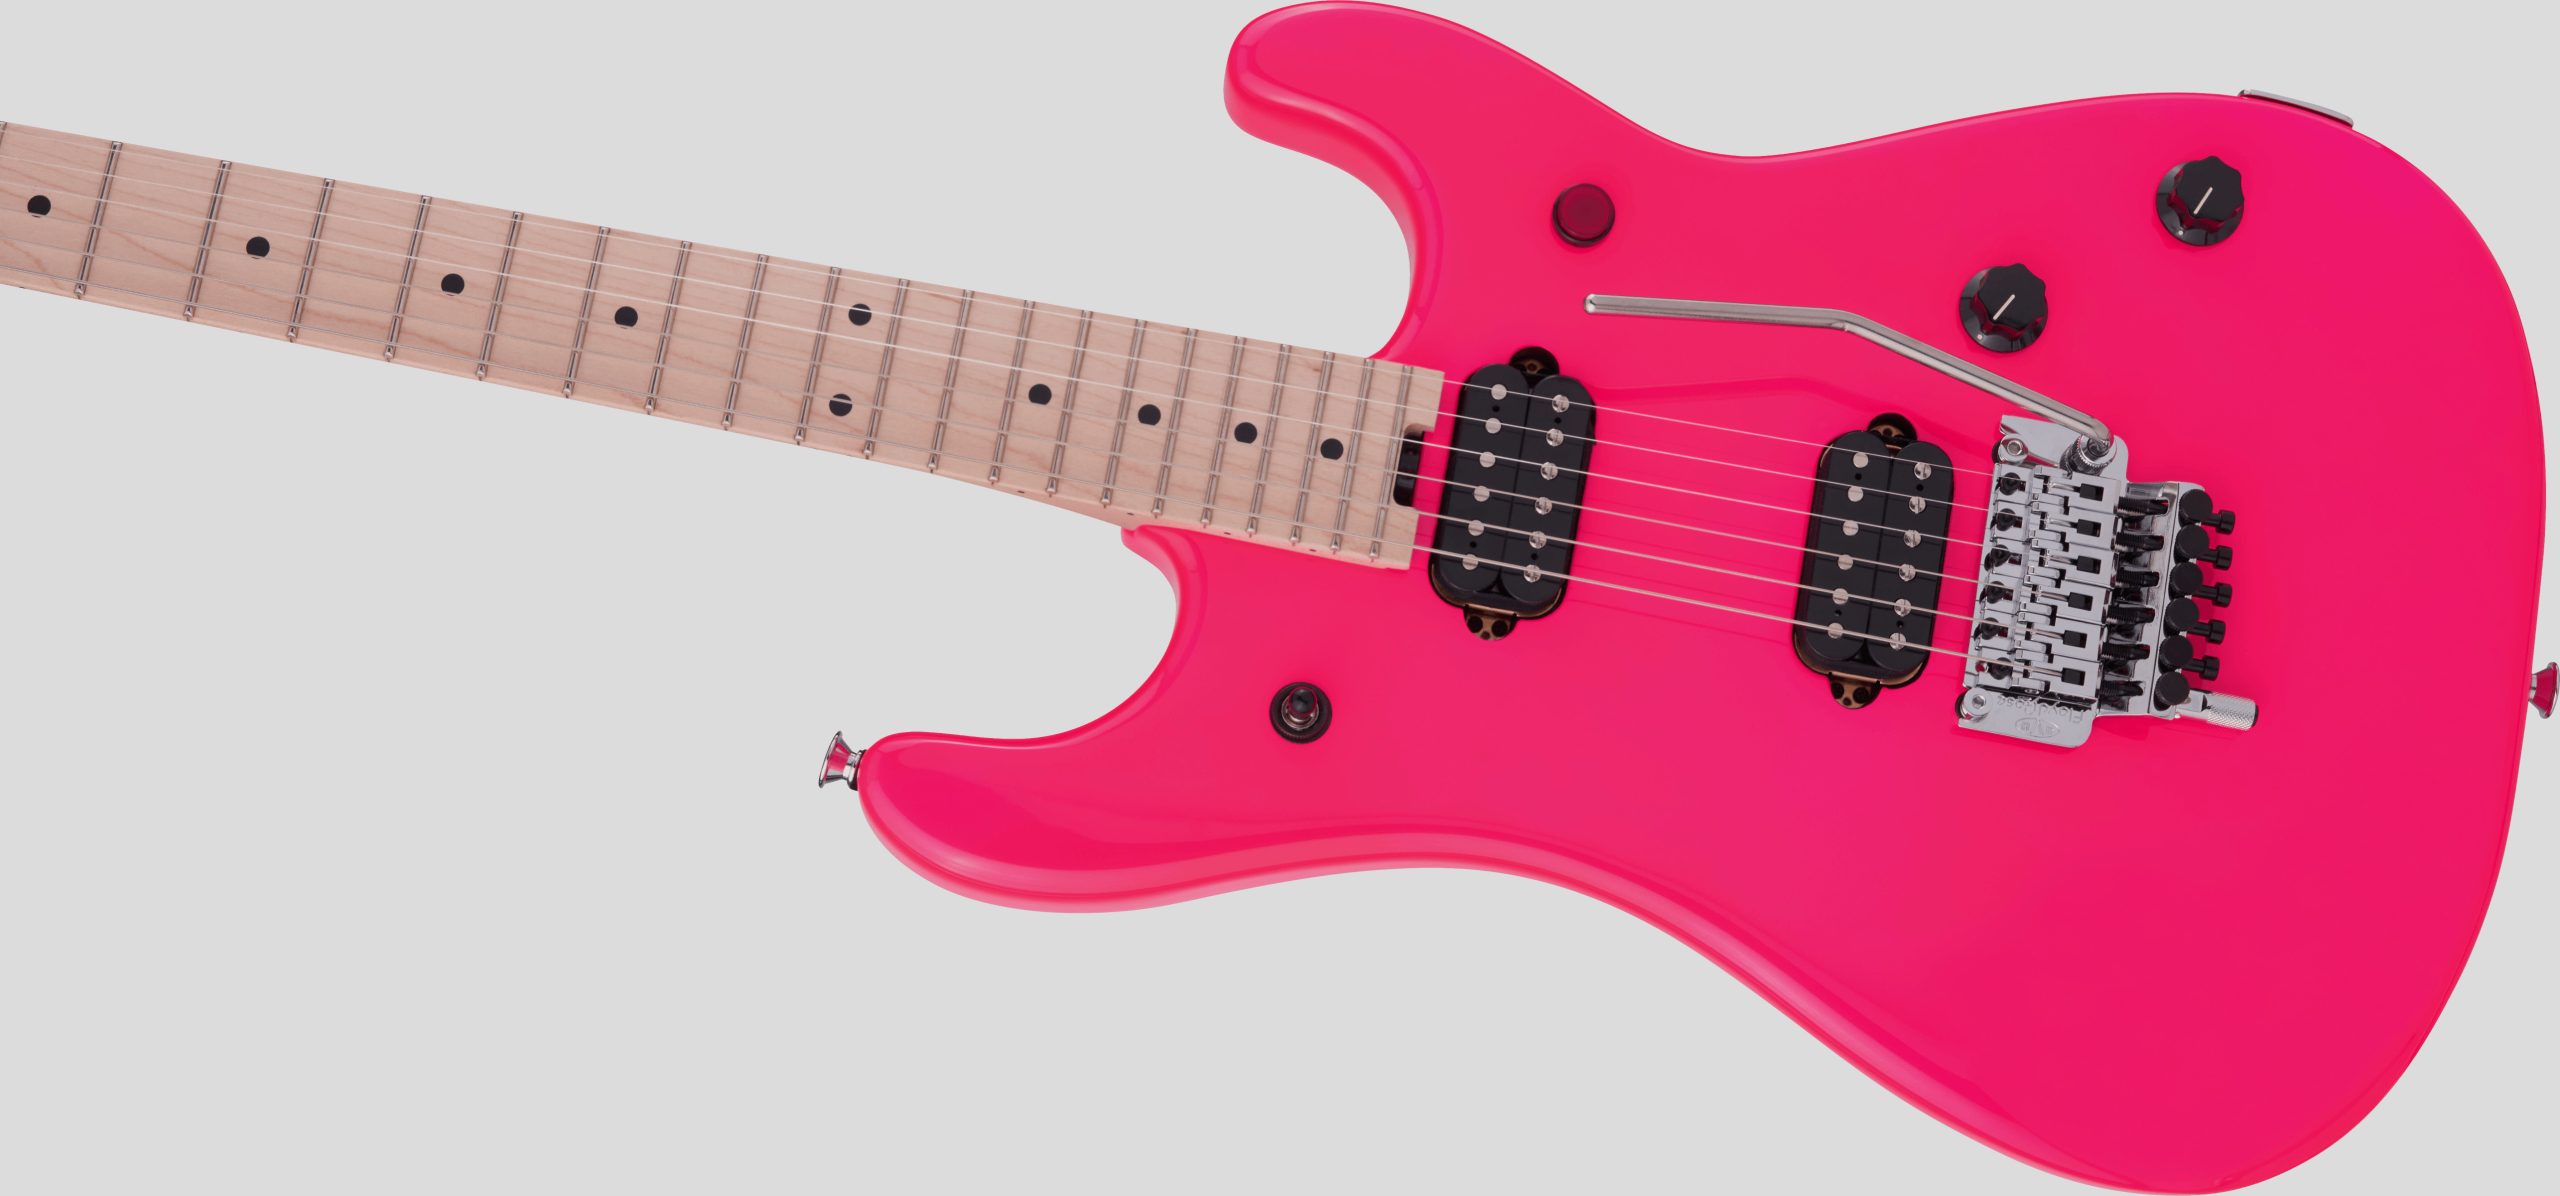 EVH 5150 Standard Maple Fingerboard Neon Pink 4